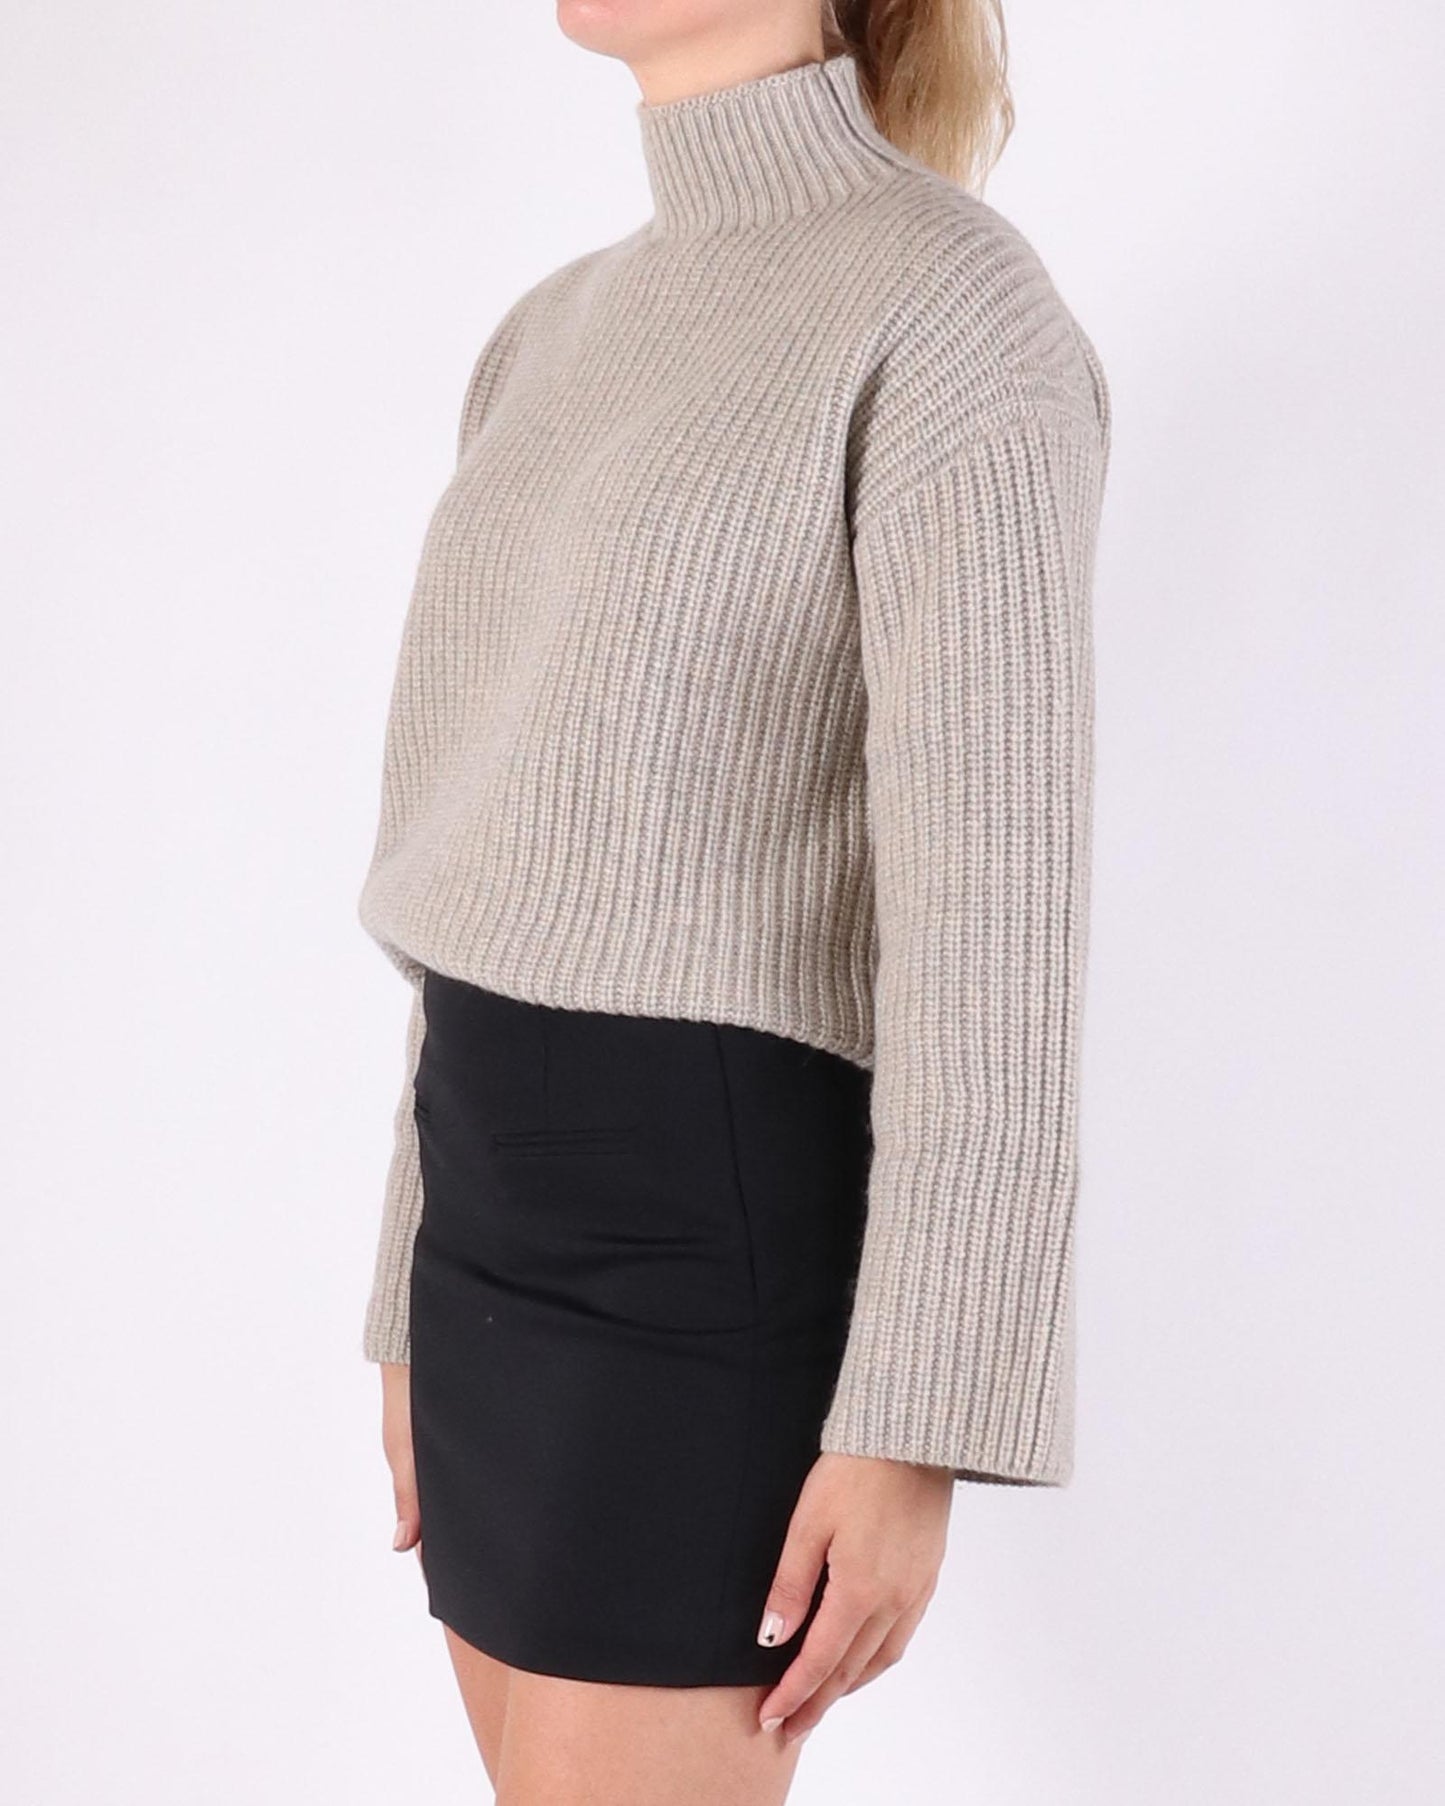 Loulou Studio sweater